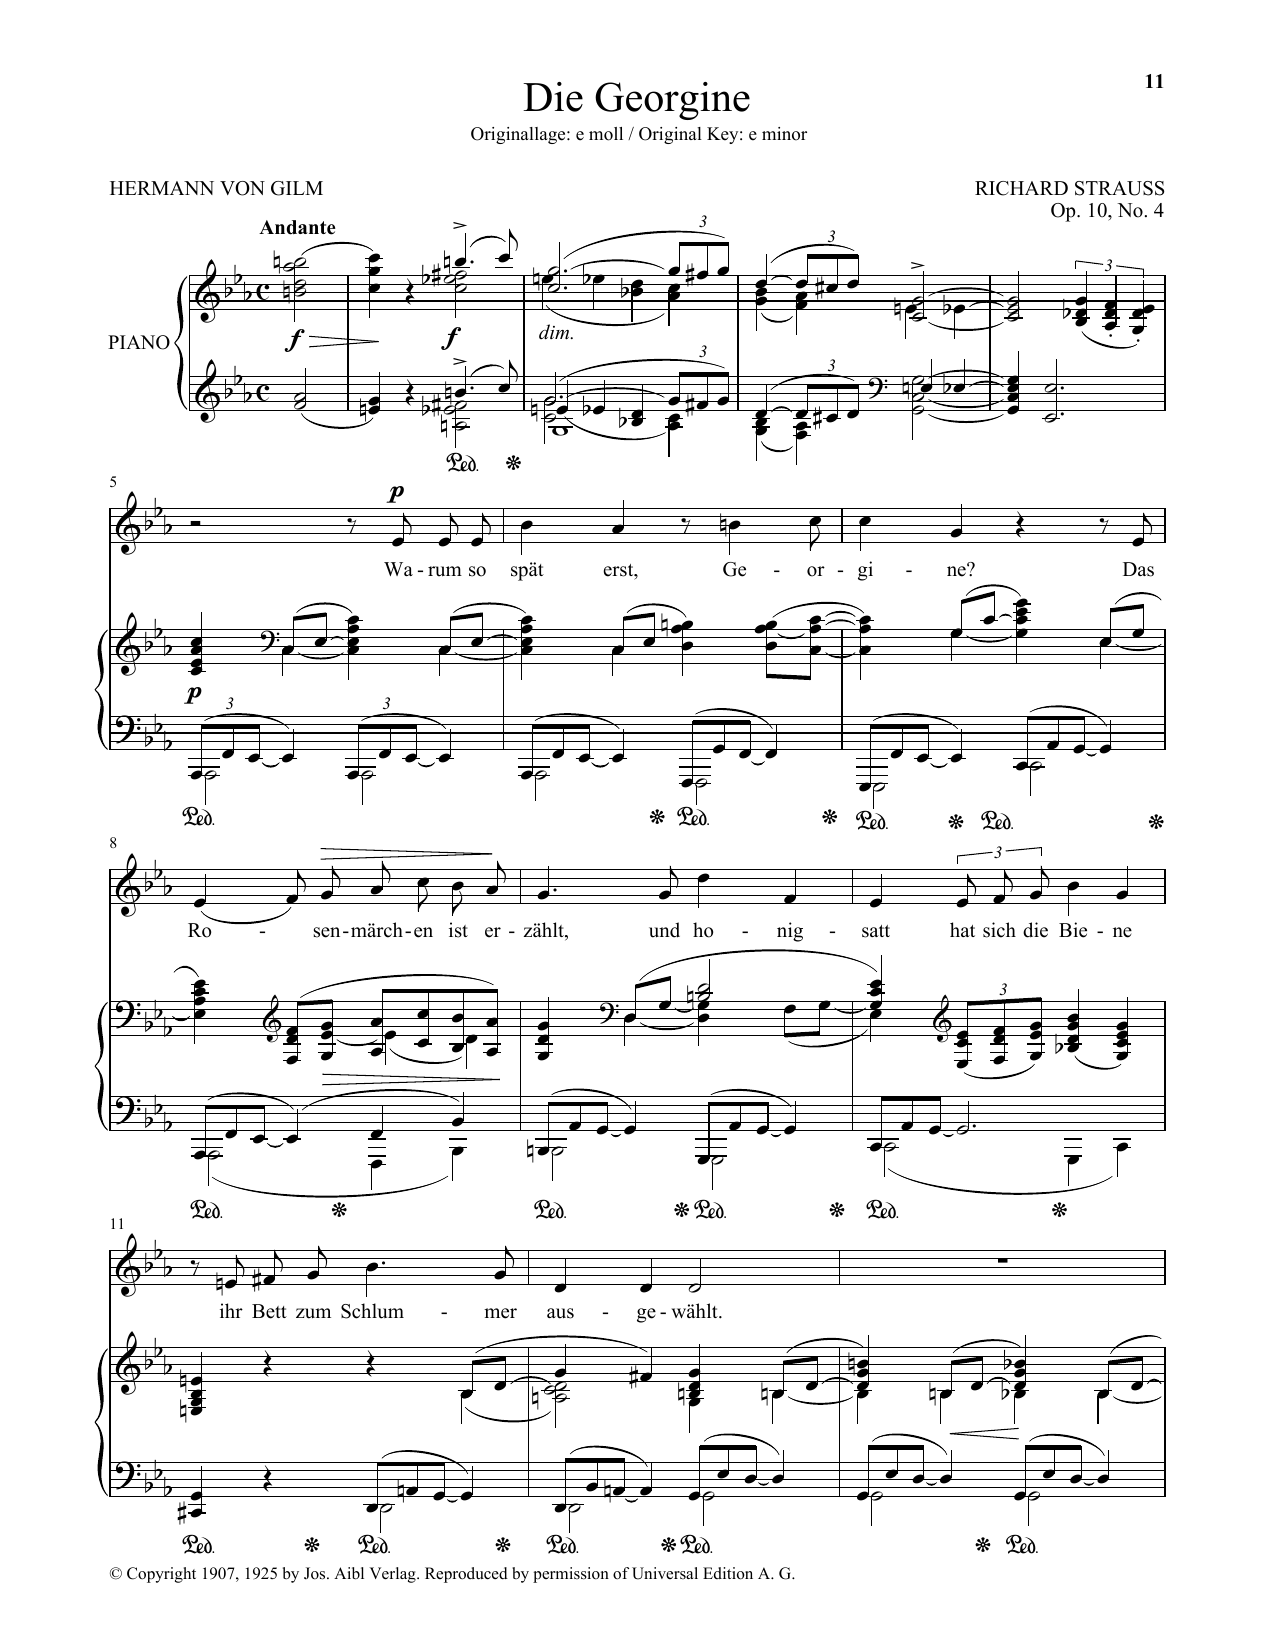 Download Richard Strauss Die Georgine (Low Voice) Sheet Music